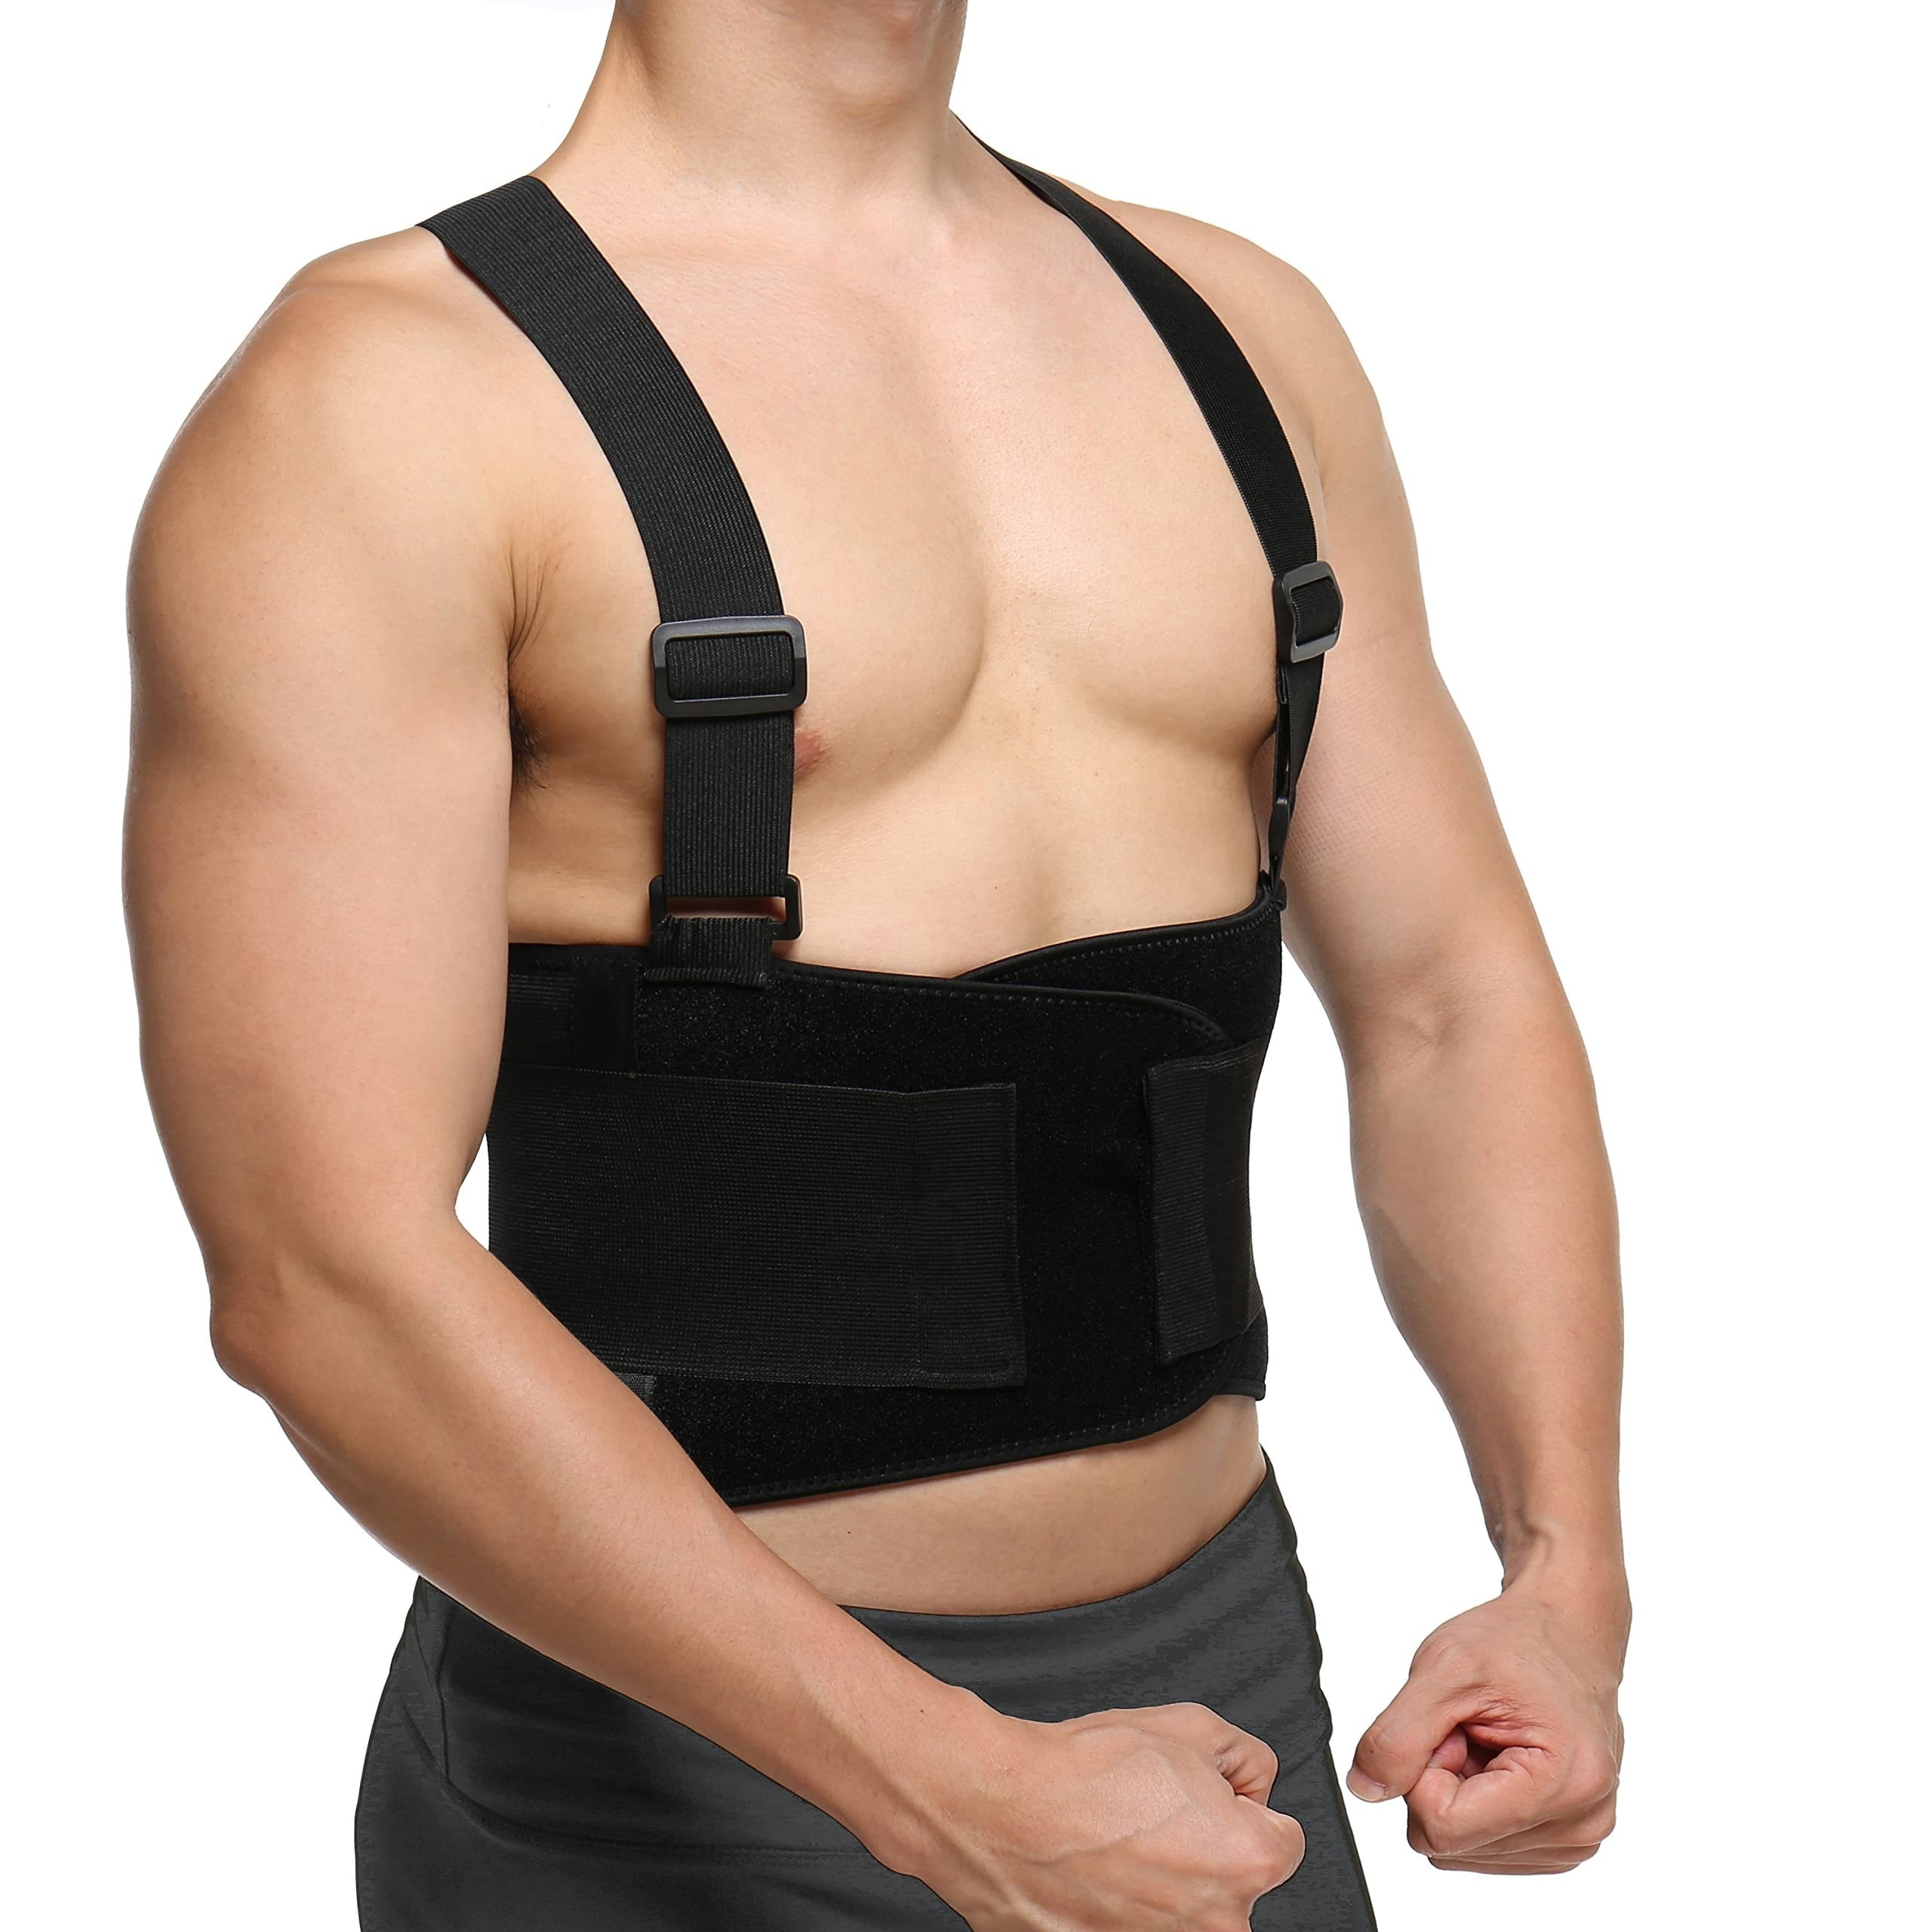 Cinturón lumbar de musculación - Cinturón de soporte lumbar